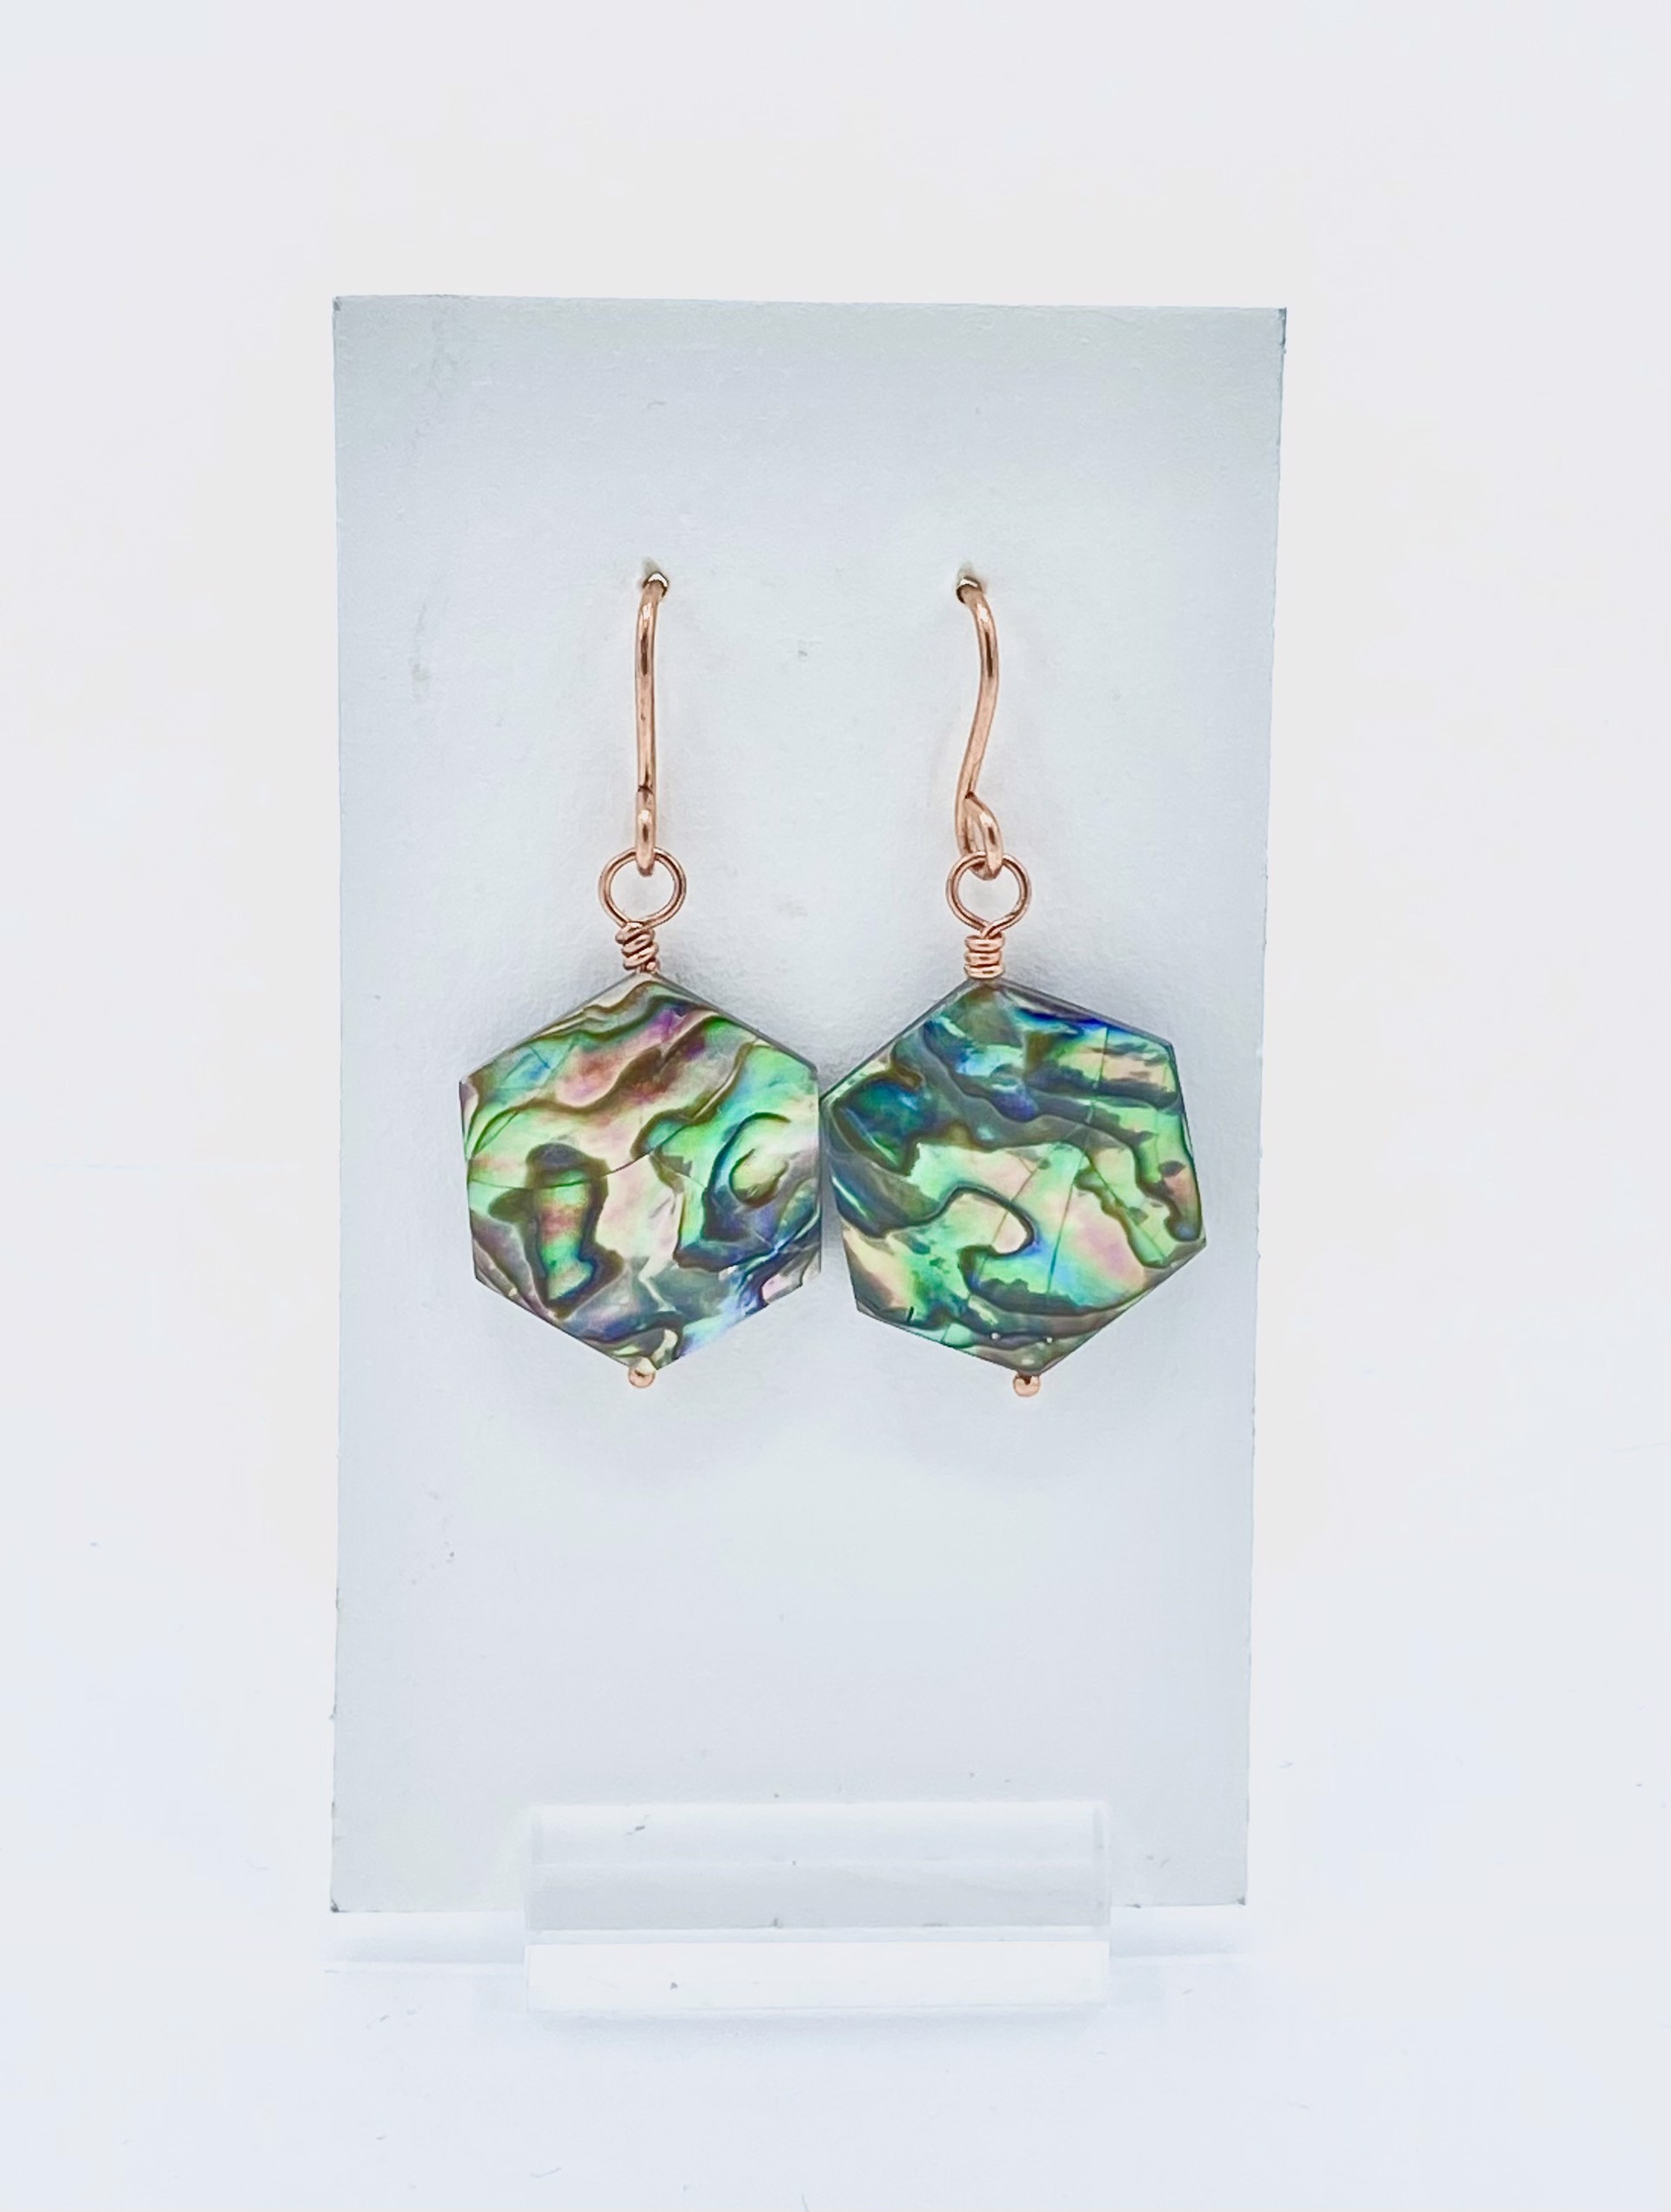 Abalone Shell Geometric Copper Earrings by Emelie Hebert